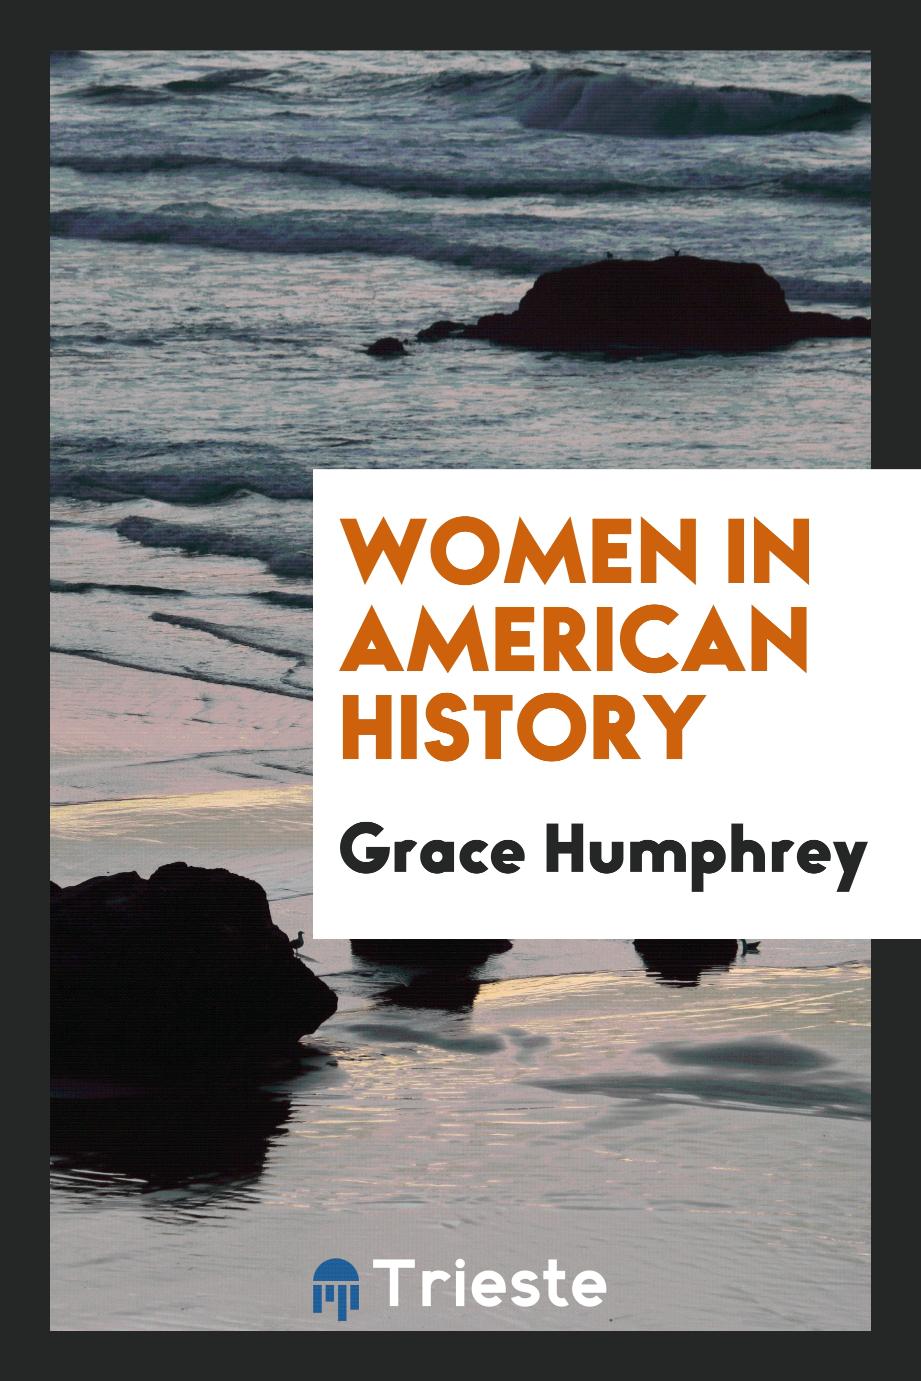 Women in American history